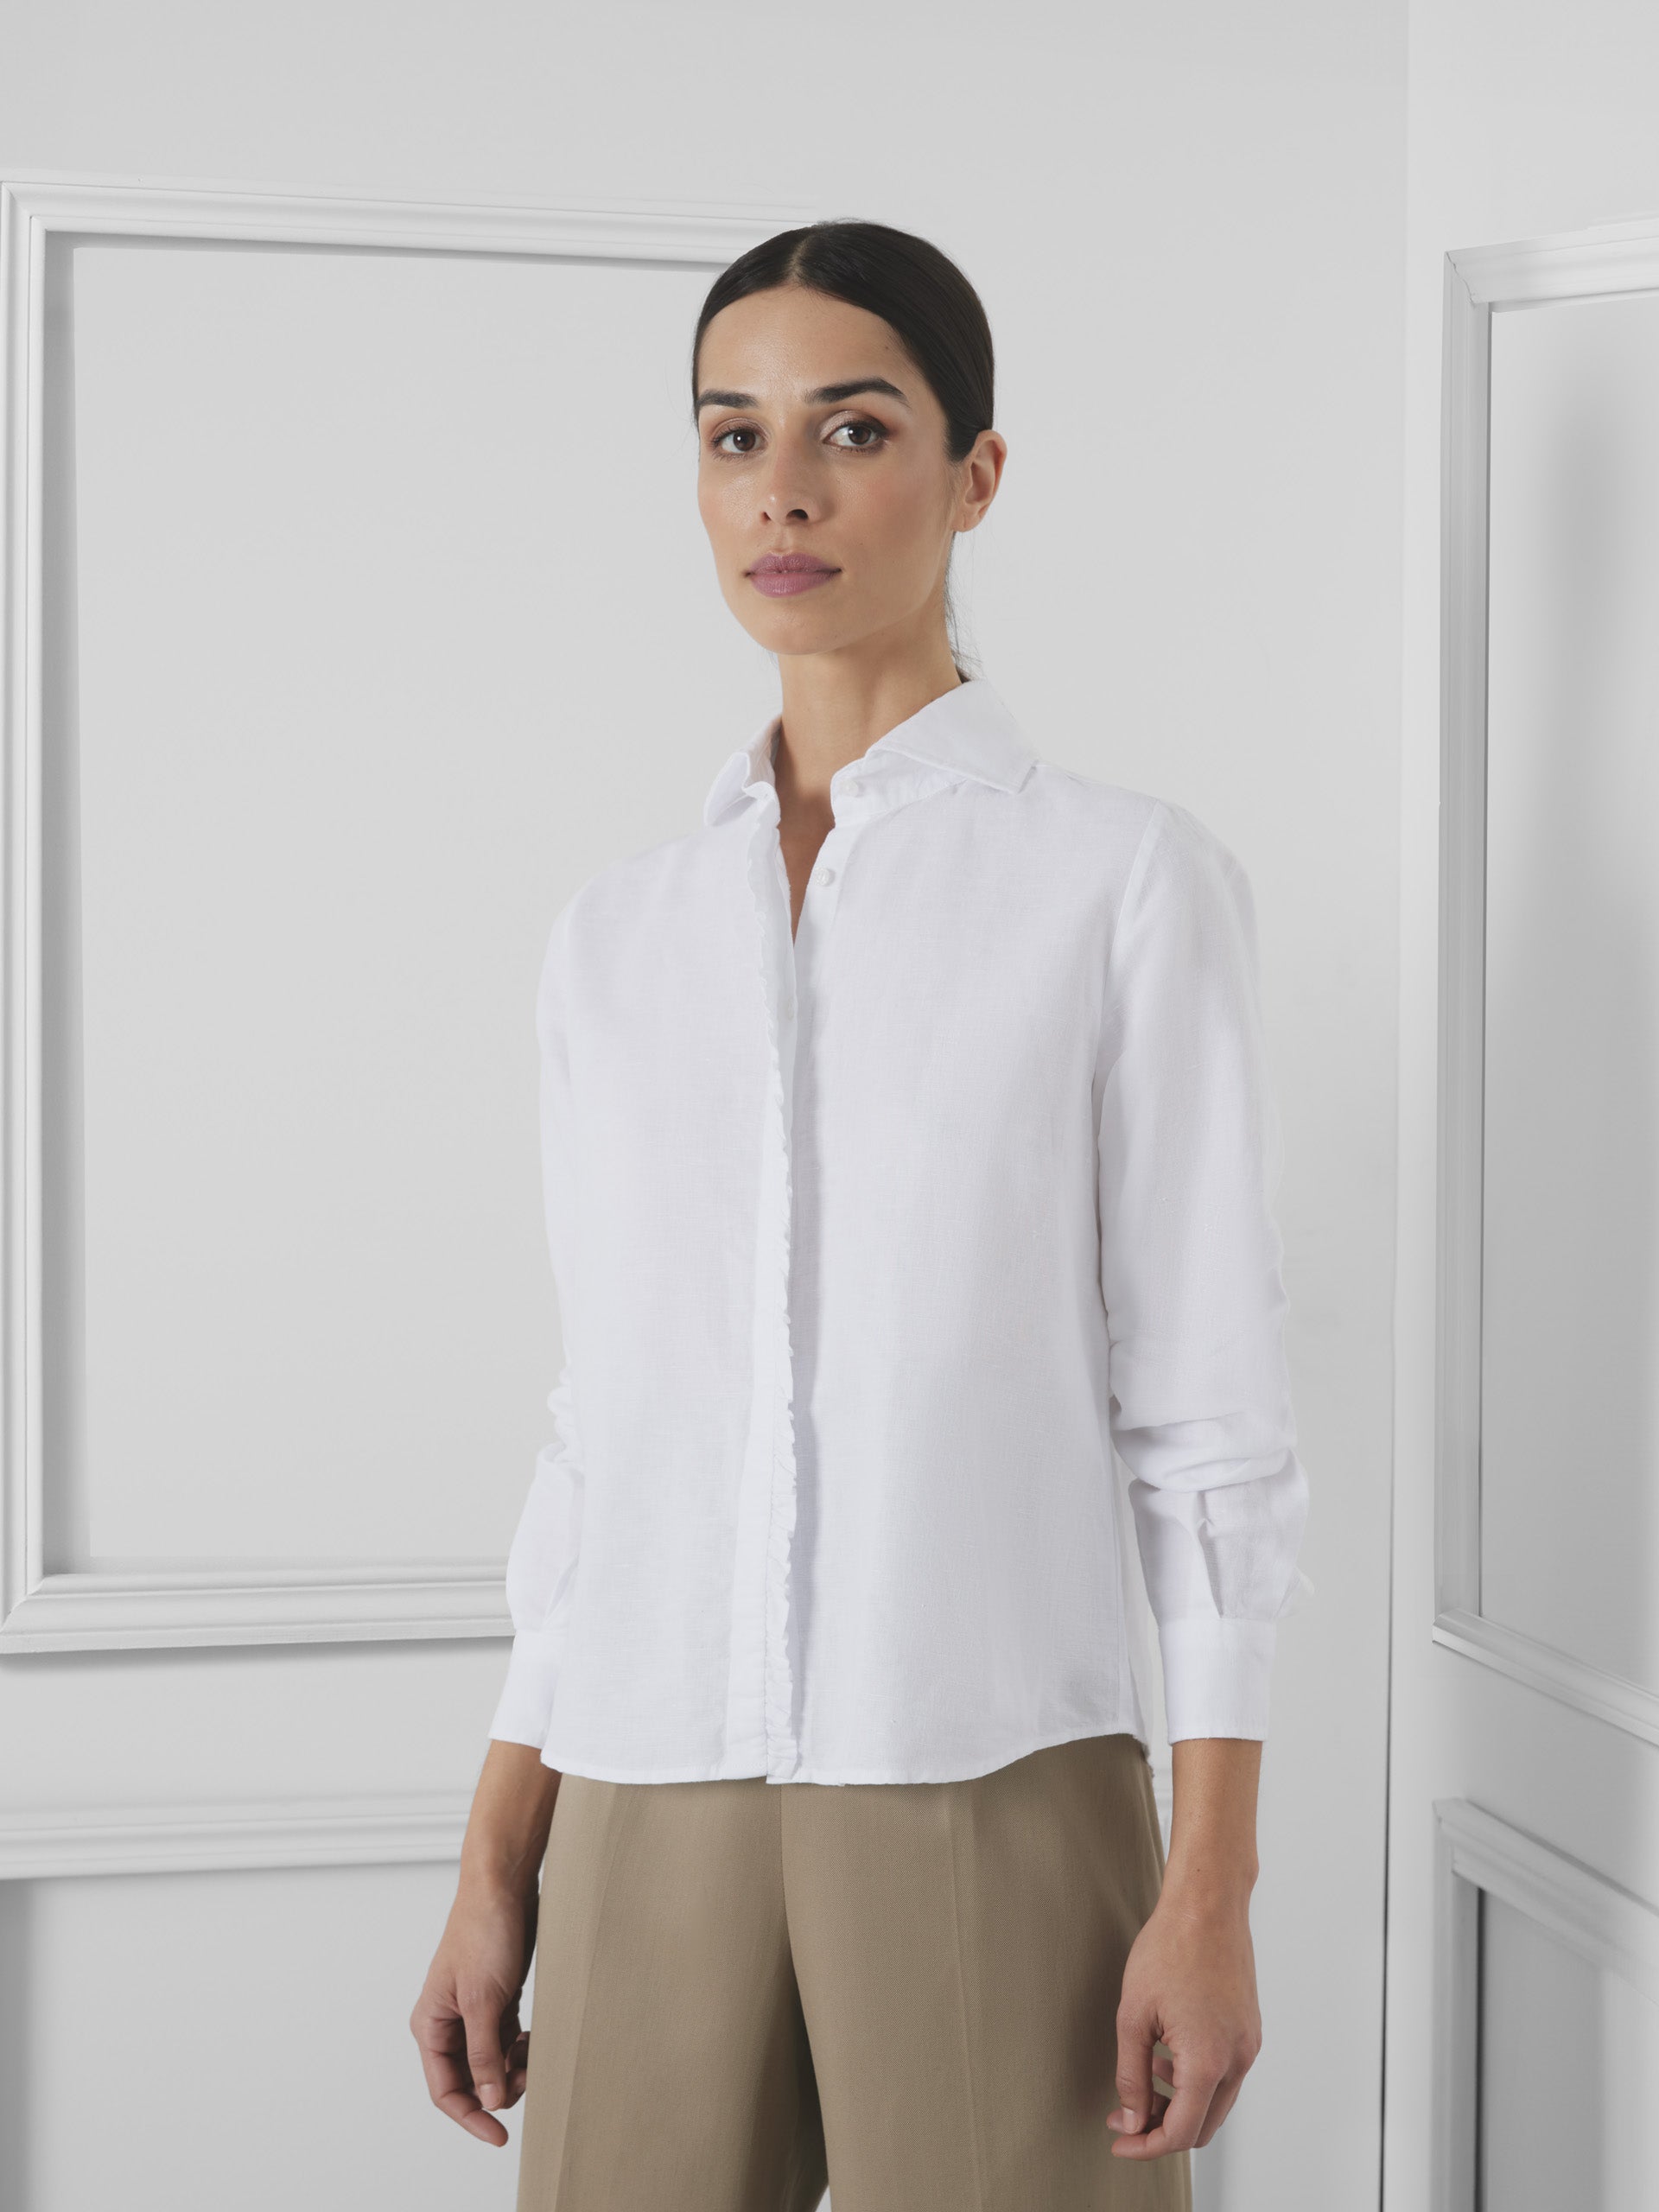 Unique white linen woman shirt